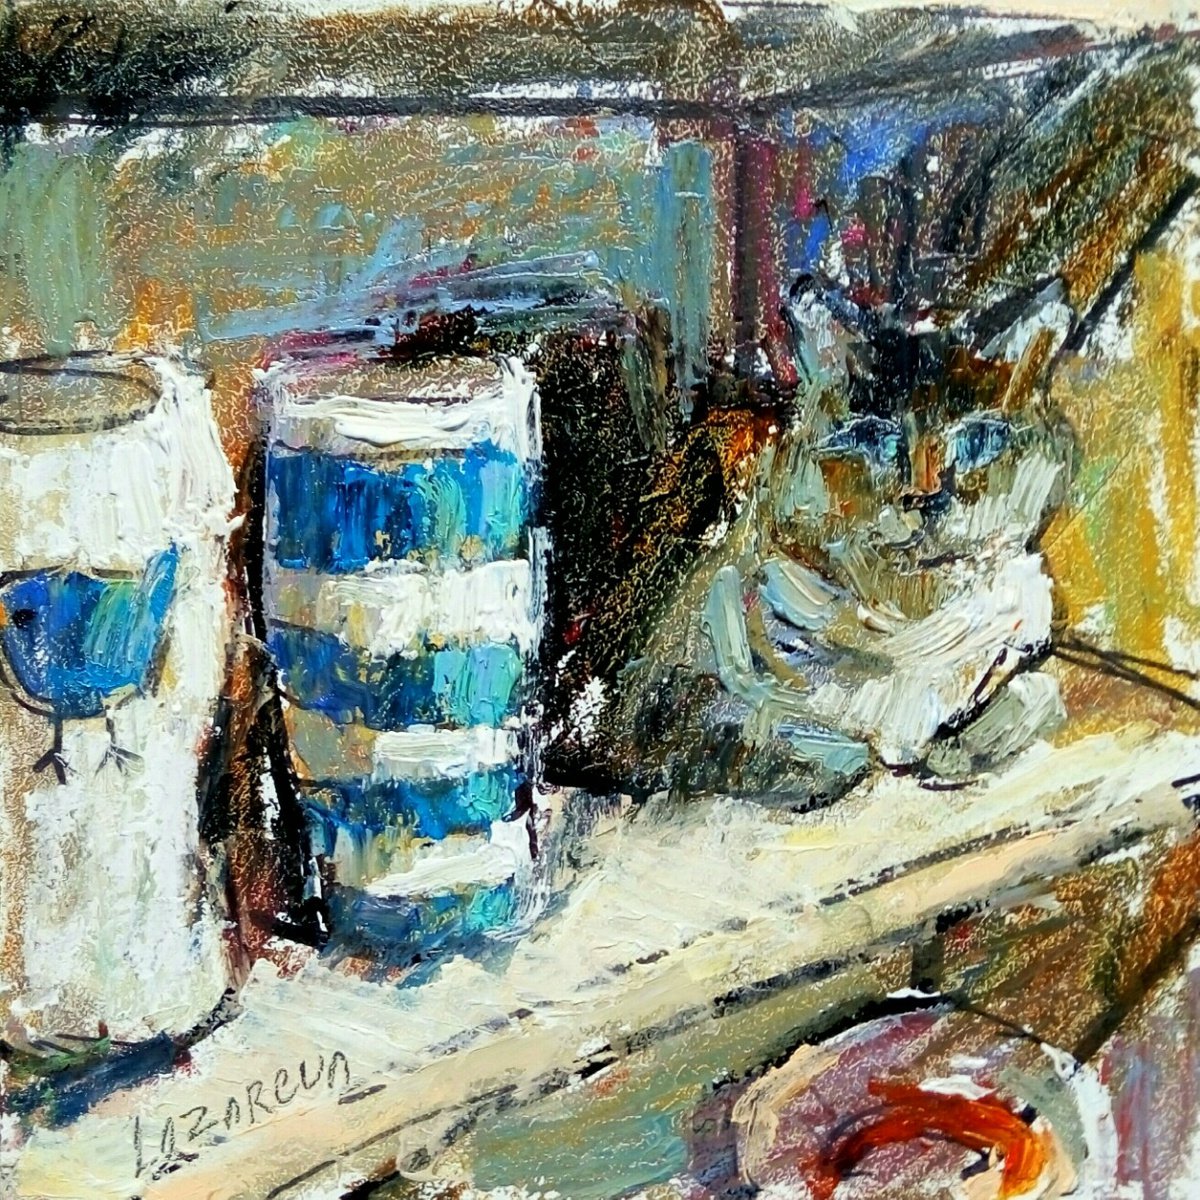 Pottery vases & cat by Valerie Lazareva